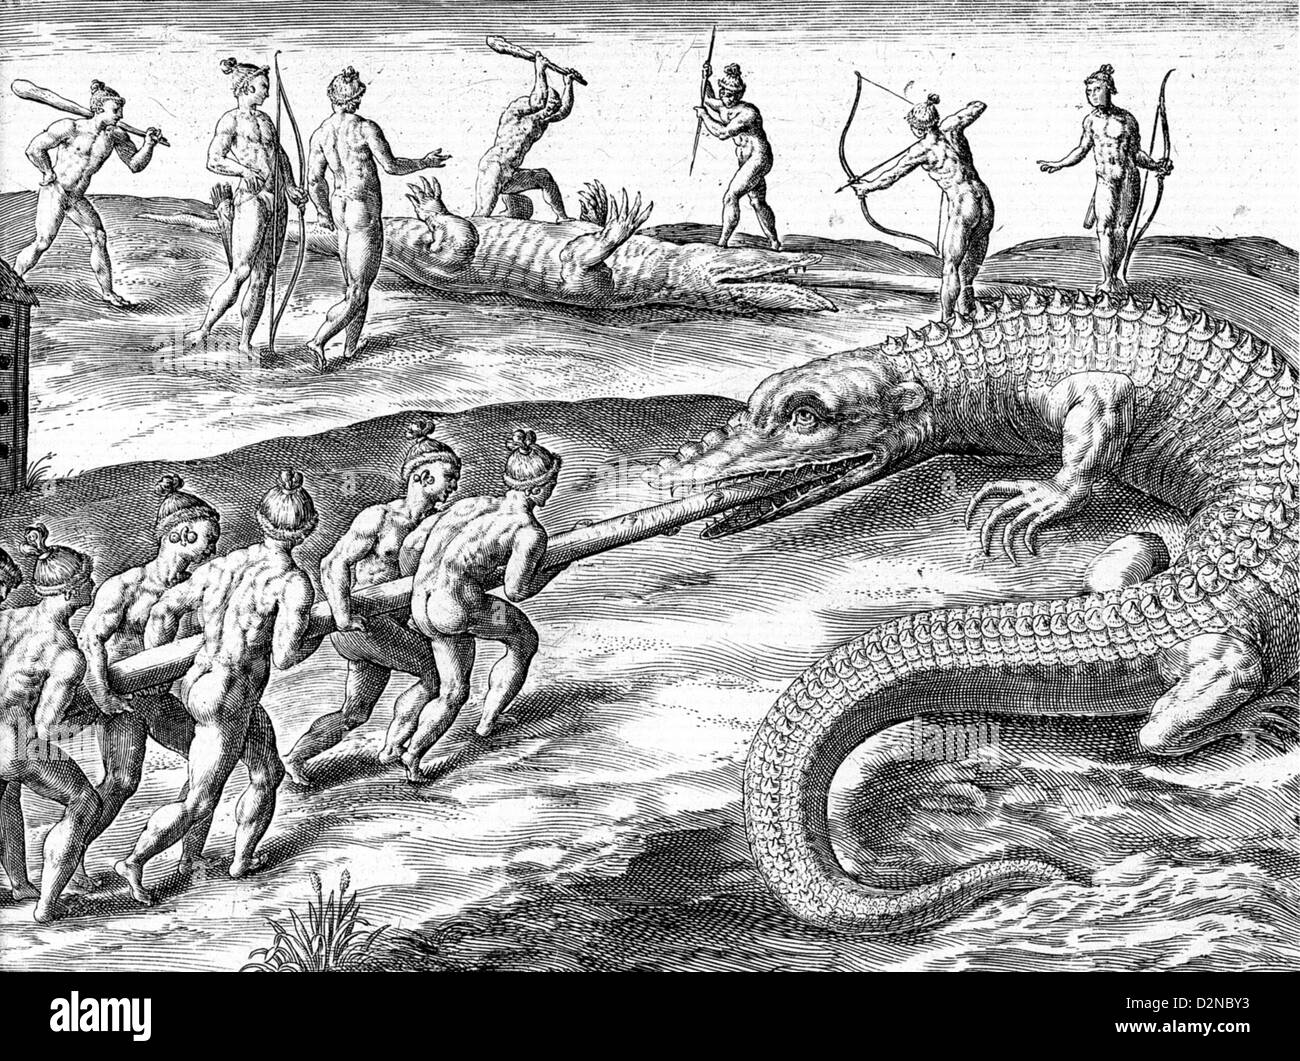 Indianer töten Alligatoren von Theodore de Bry 'America' veröffentlicht Teil2 in Frankfurt am Main im Jahre 1590. Stockfoto